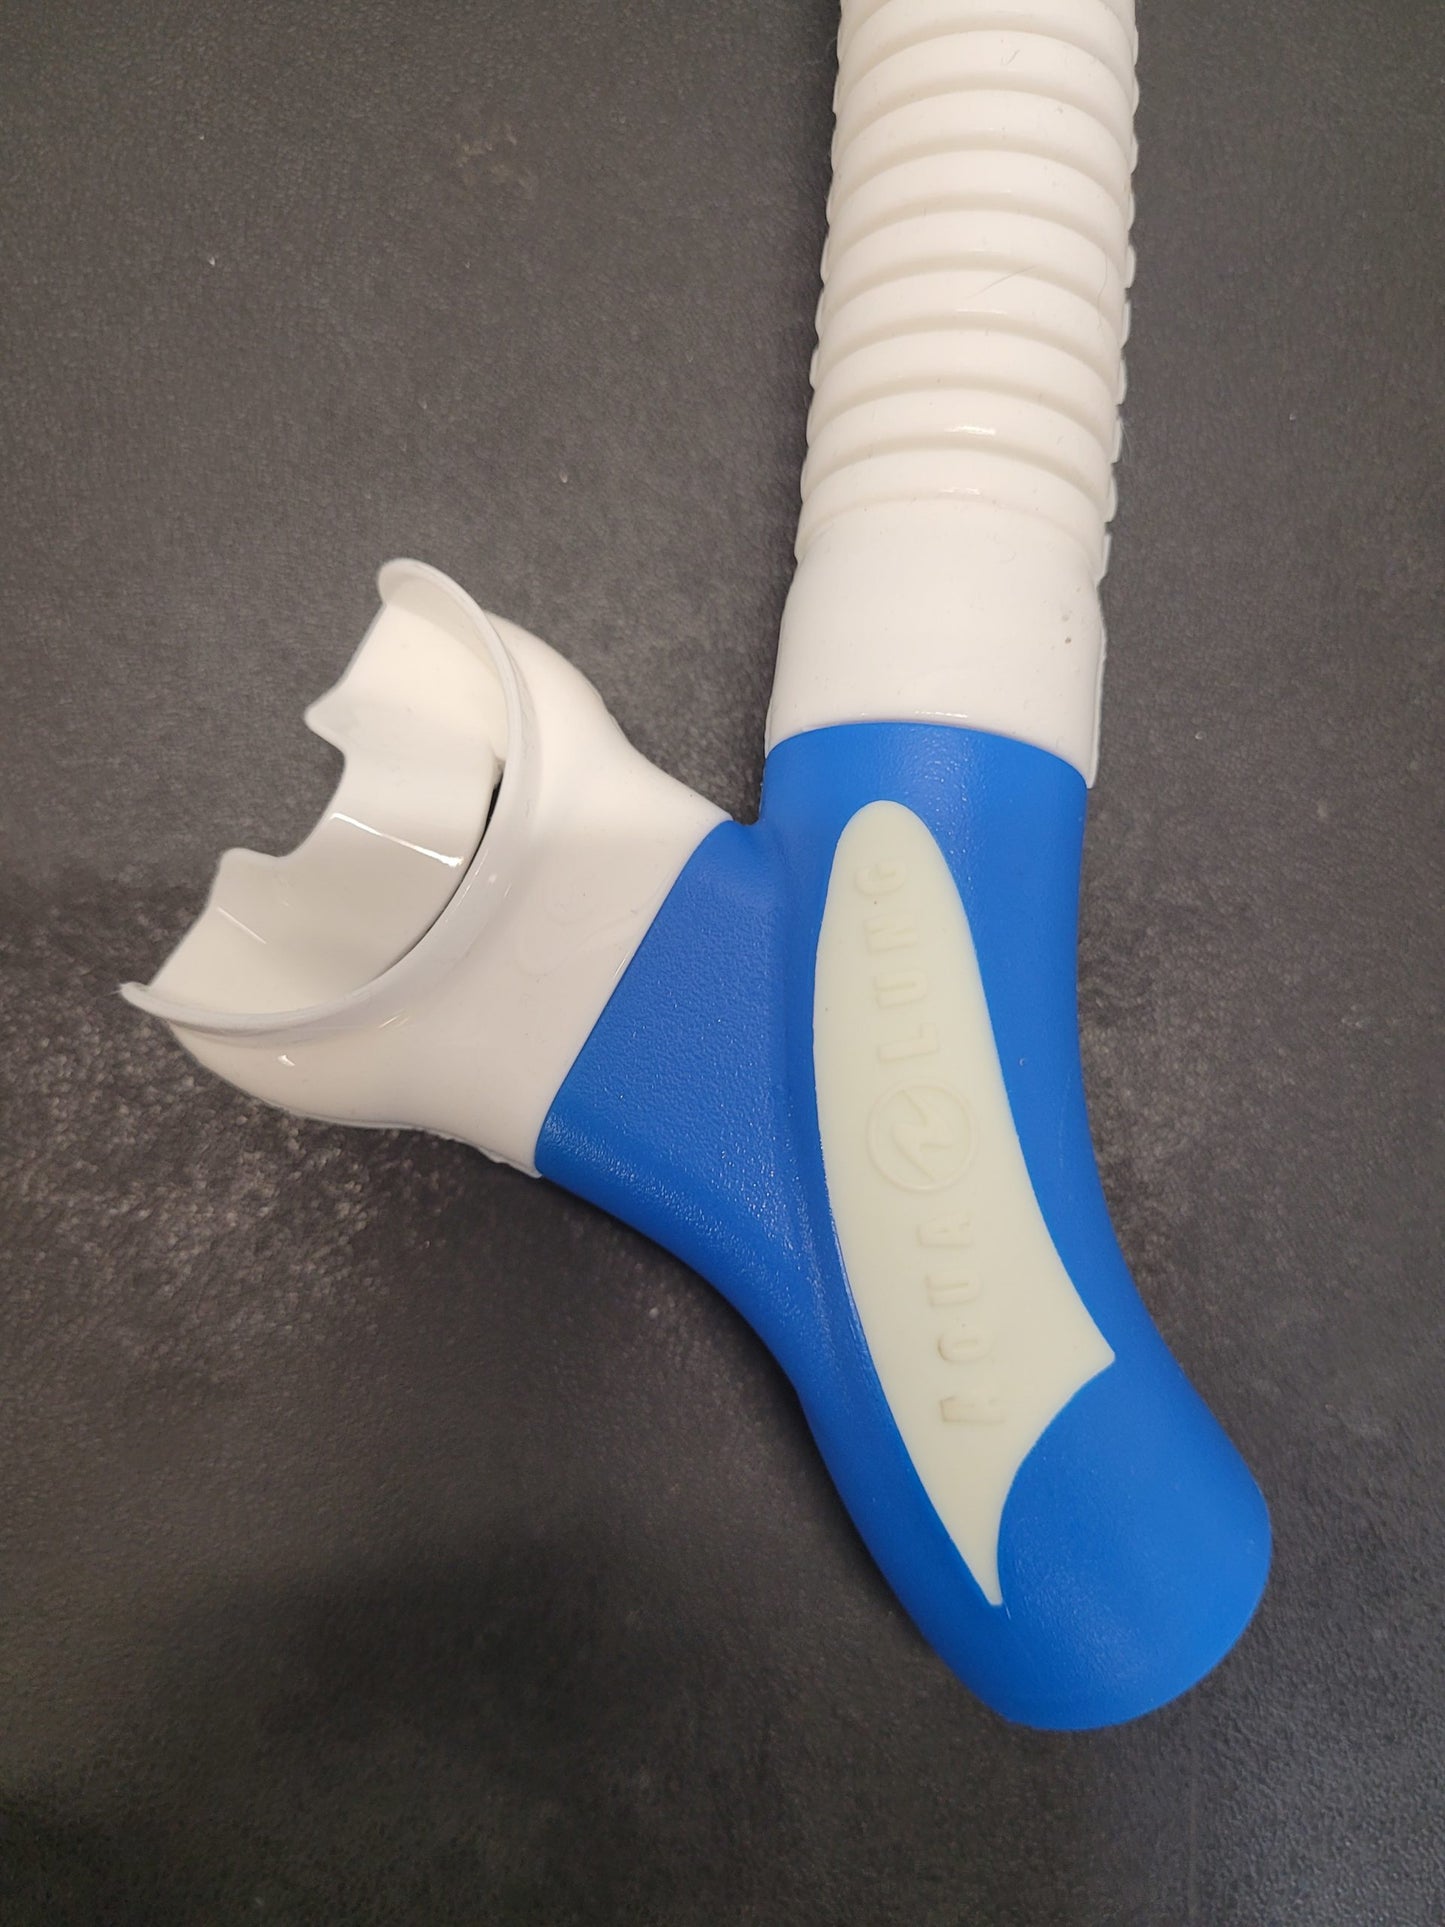 Aqua Lung Reveal X1 Dive Mask & Aqua Lung Impulse Dry Snorkel